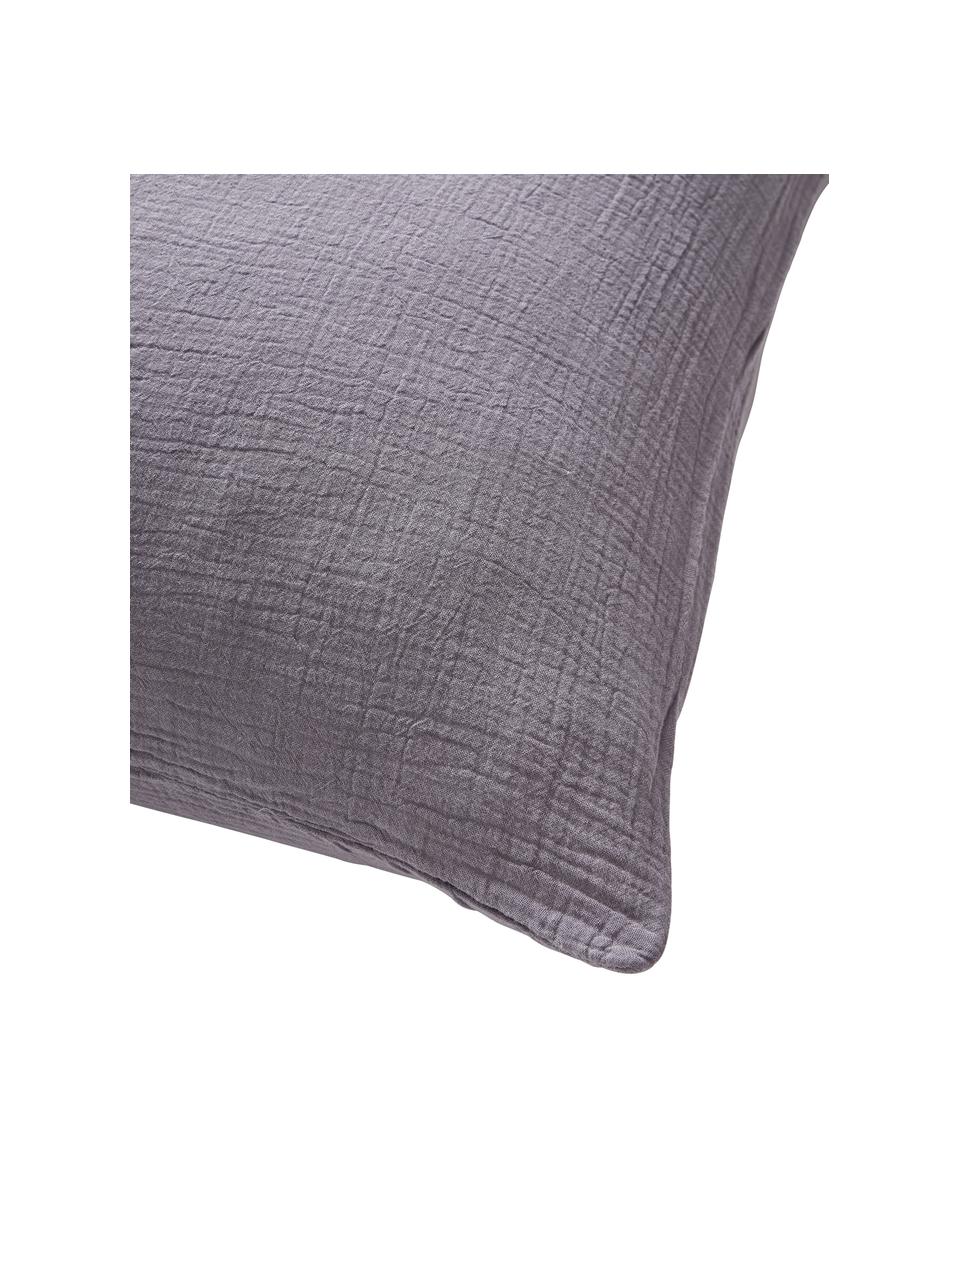 Mousseline kussenhoes Odile in donkergrijs, Weeftechniek: mousseline Draaddichtheid, Grijs, B 60 x L 70 cm